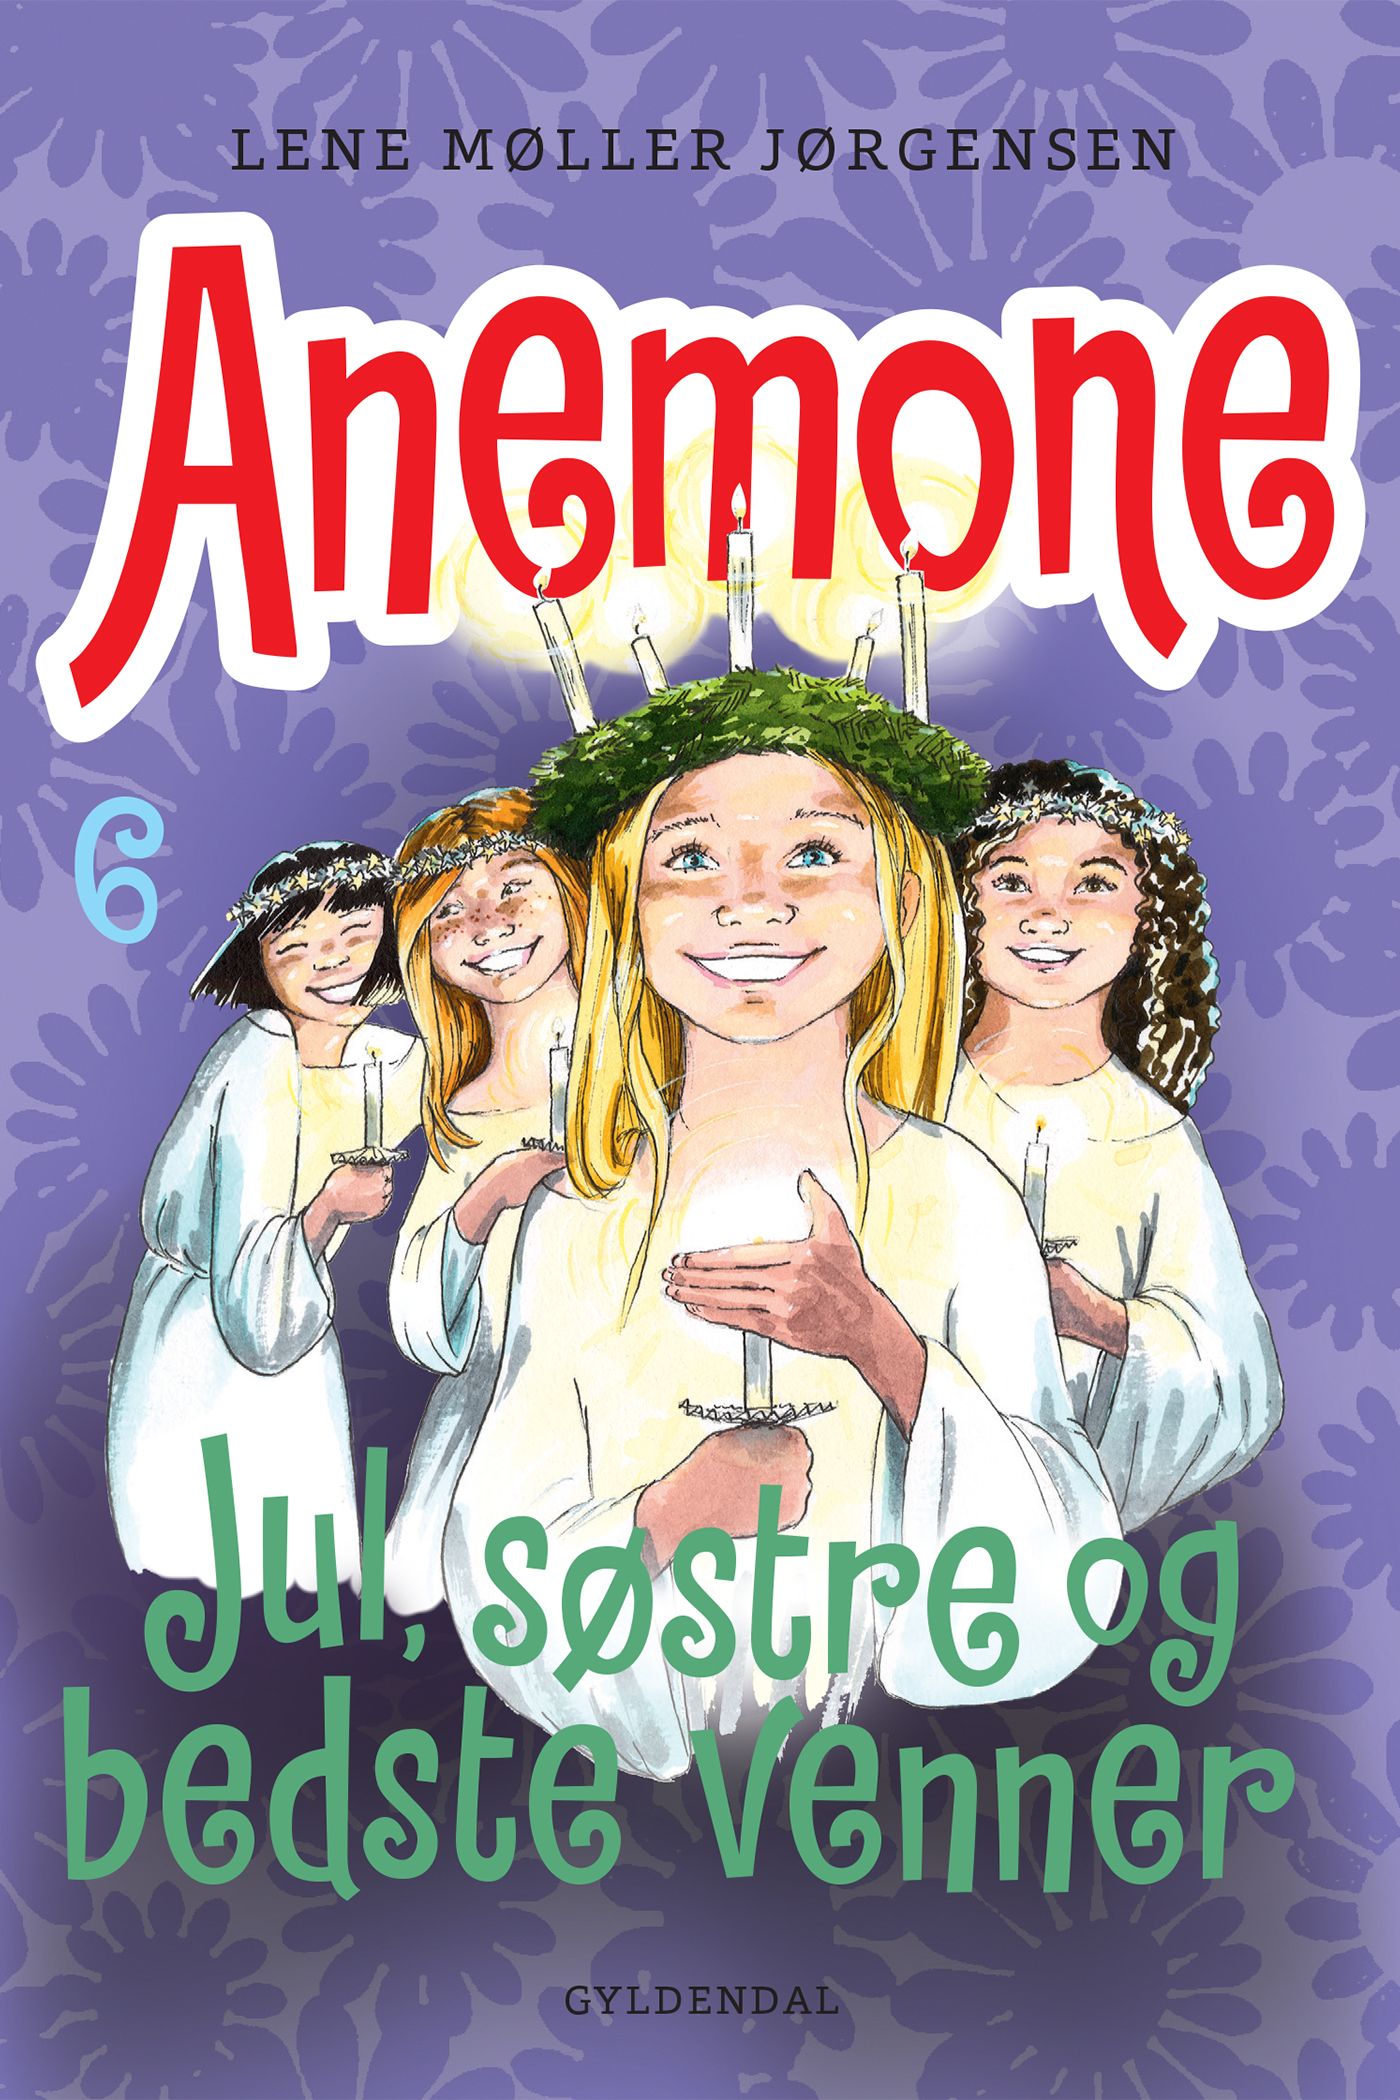 Anemone 6 - Jul, søstre og bedste venner, eBook by Lene Møller Jørgensen